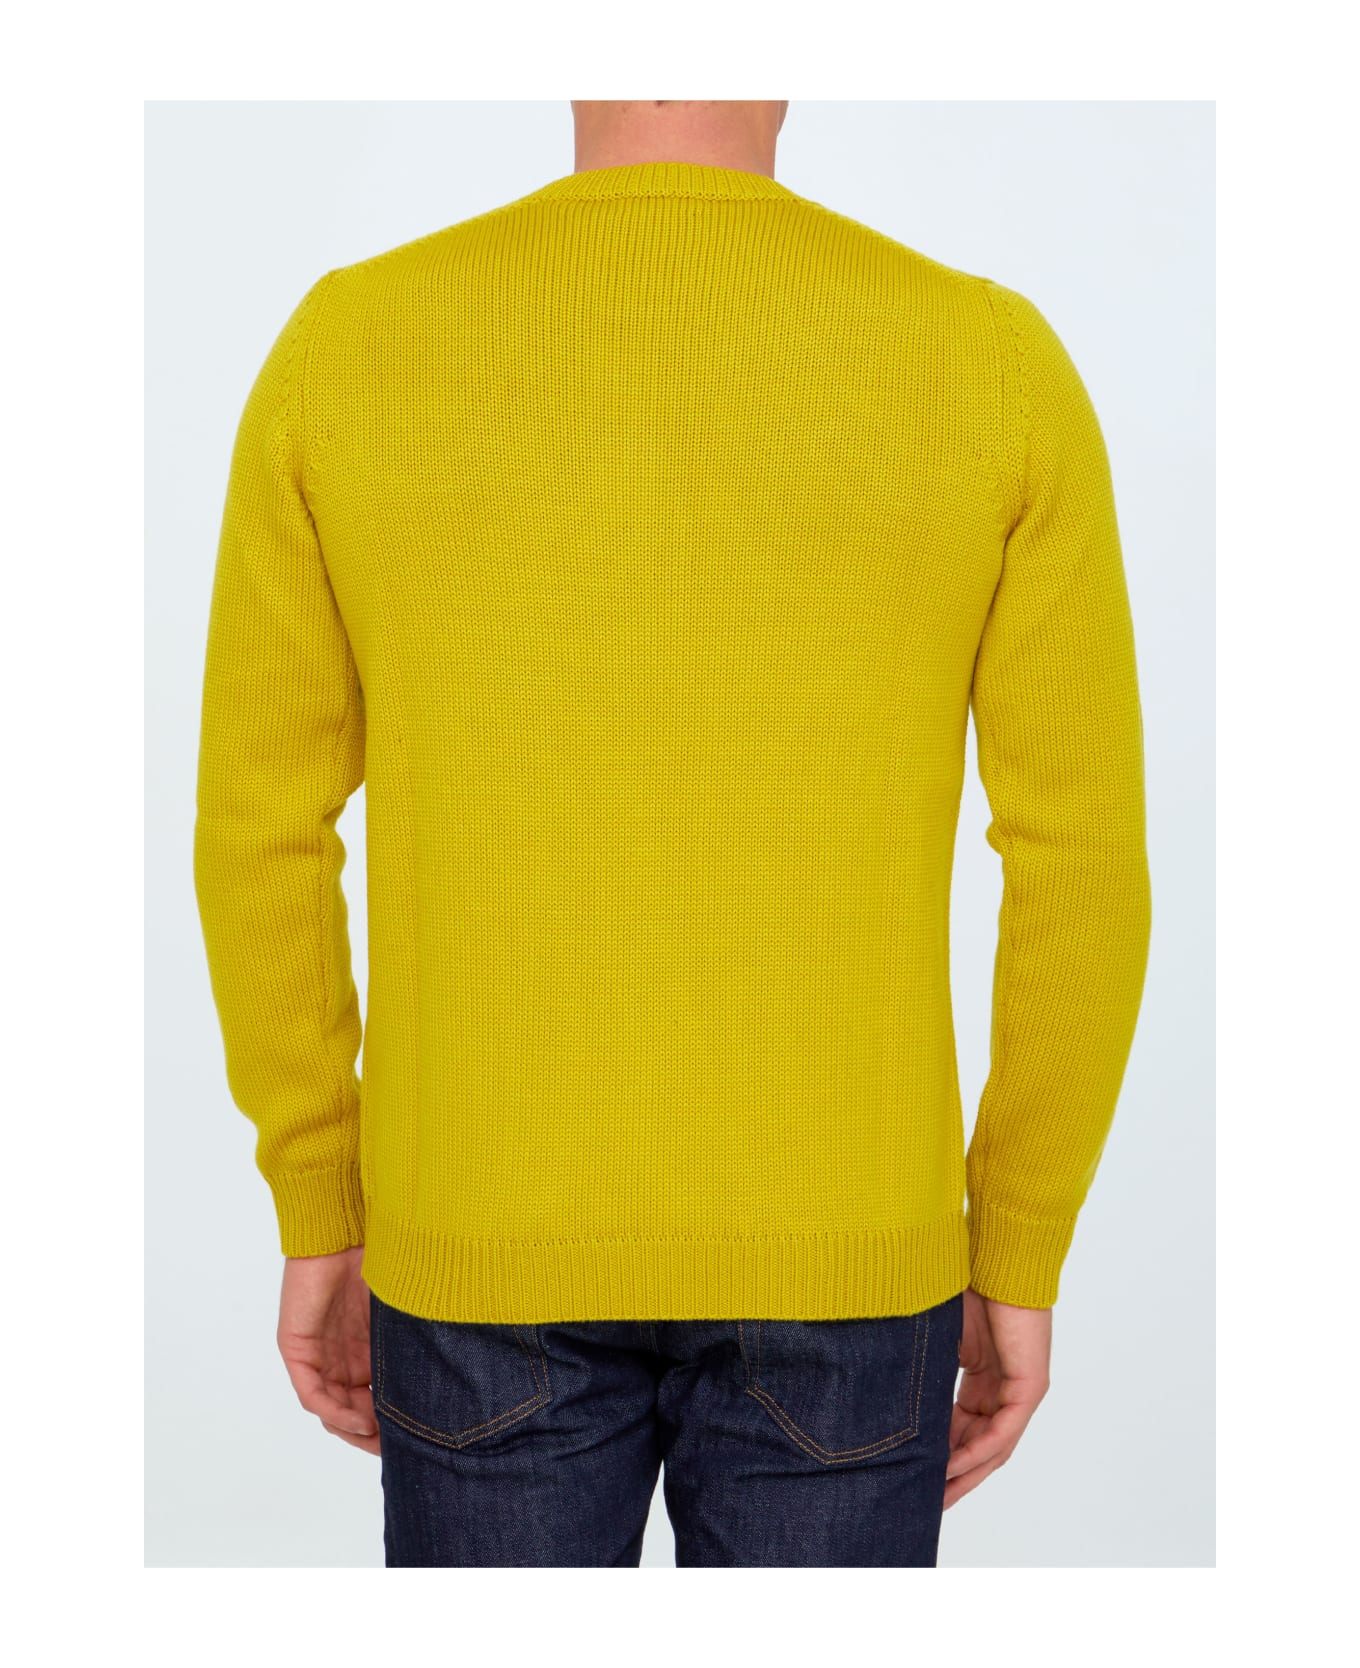 Roberto Collina Yellow Merino Wool Sweater - YELLOW